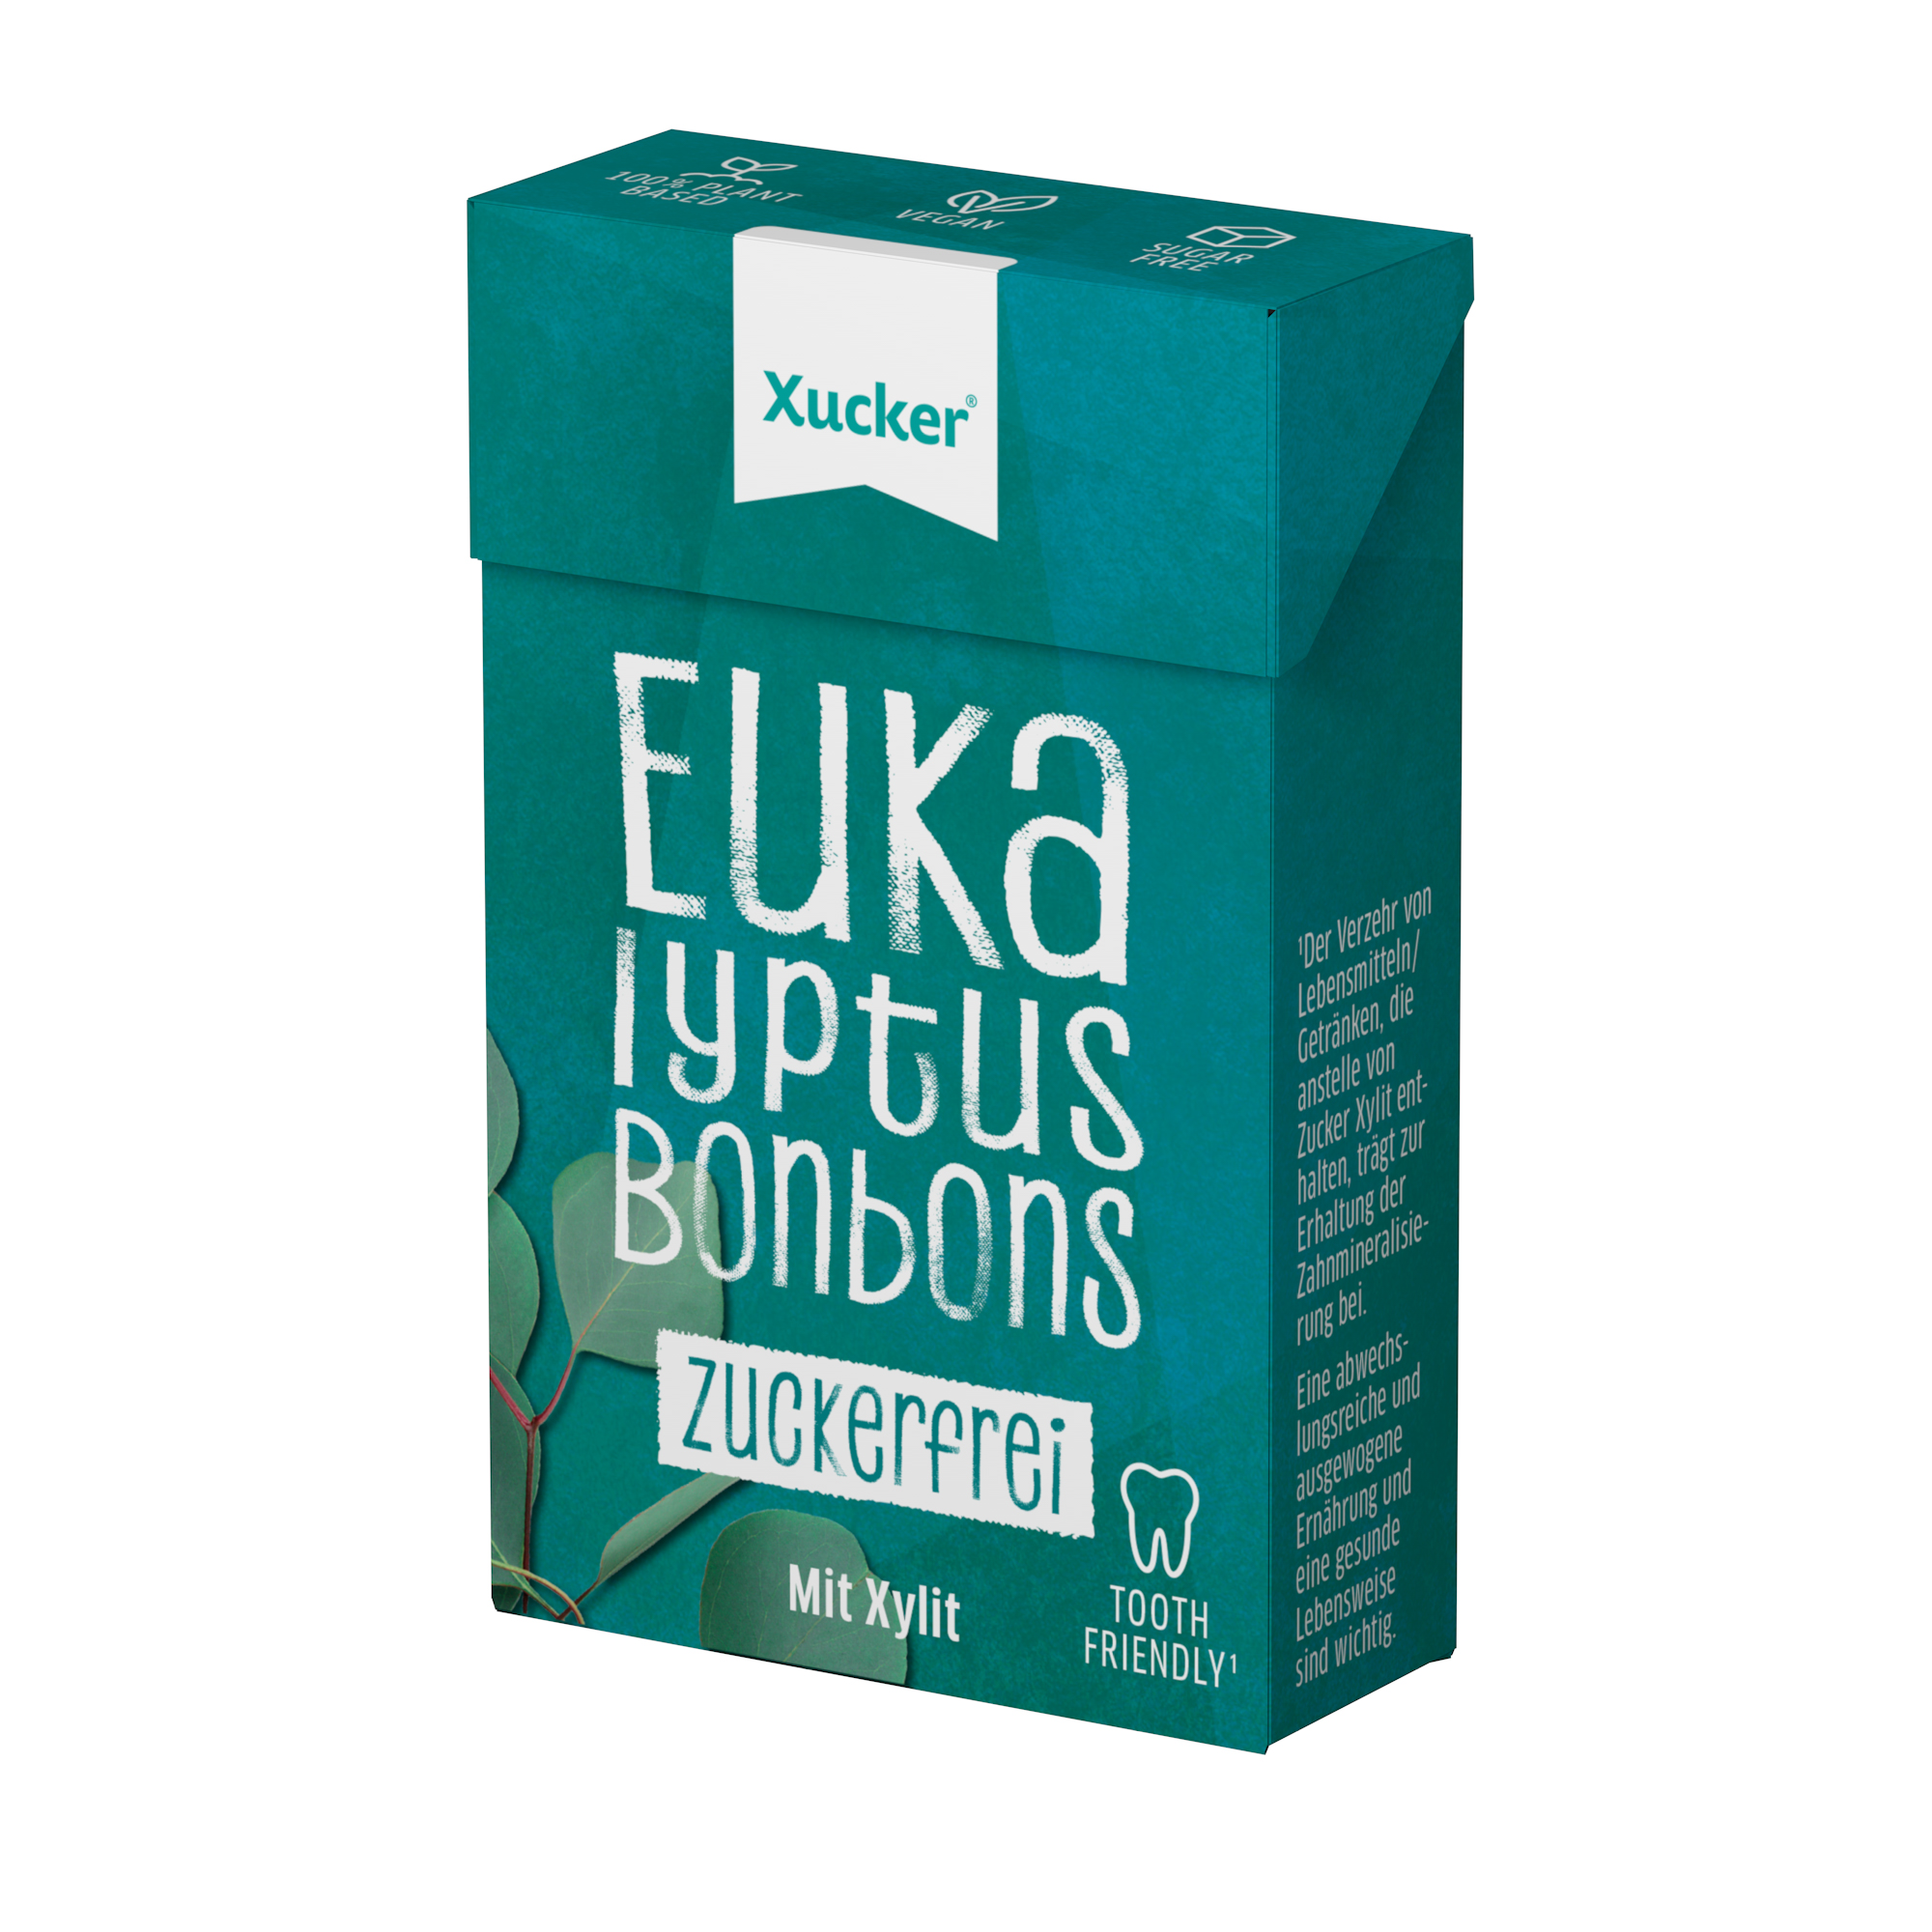 Xucker Xylit-Bonbons Eucalyptus 50g